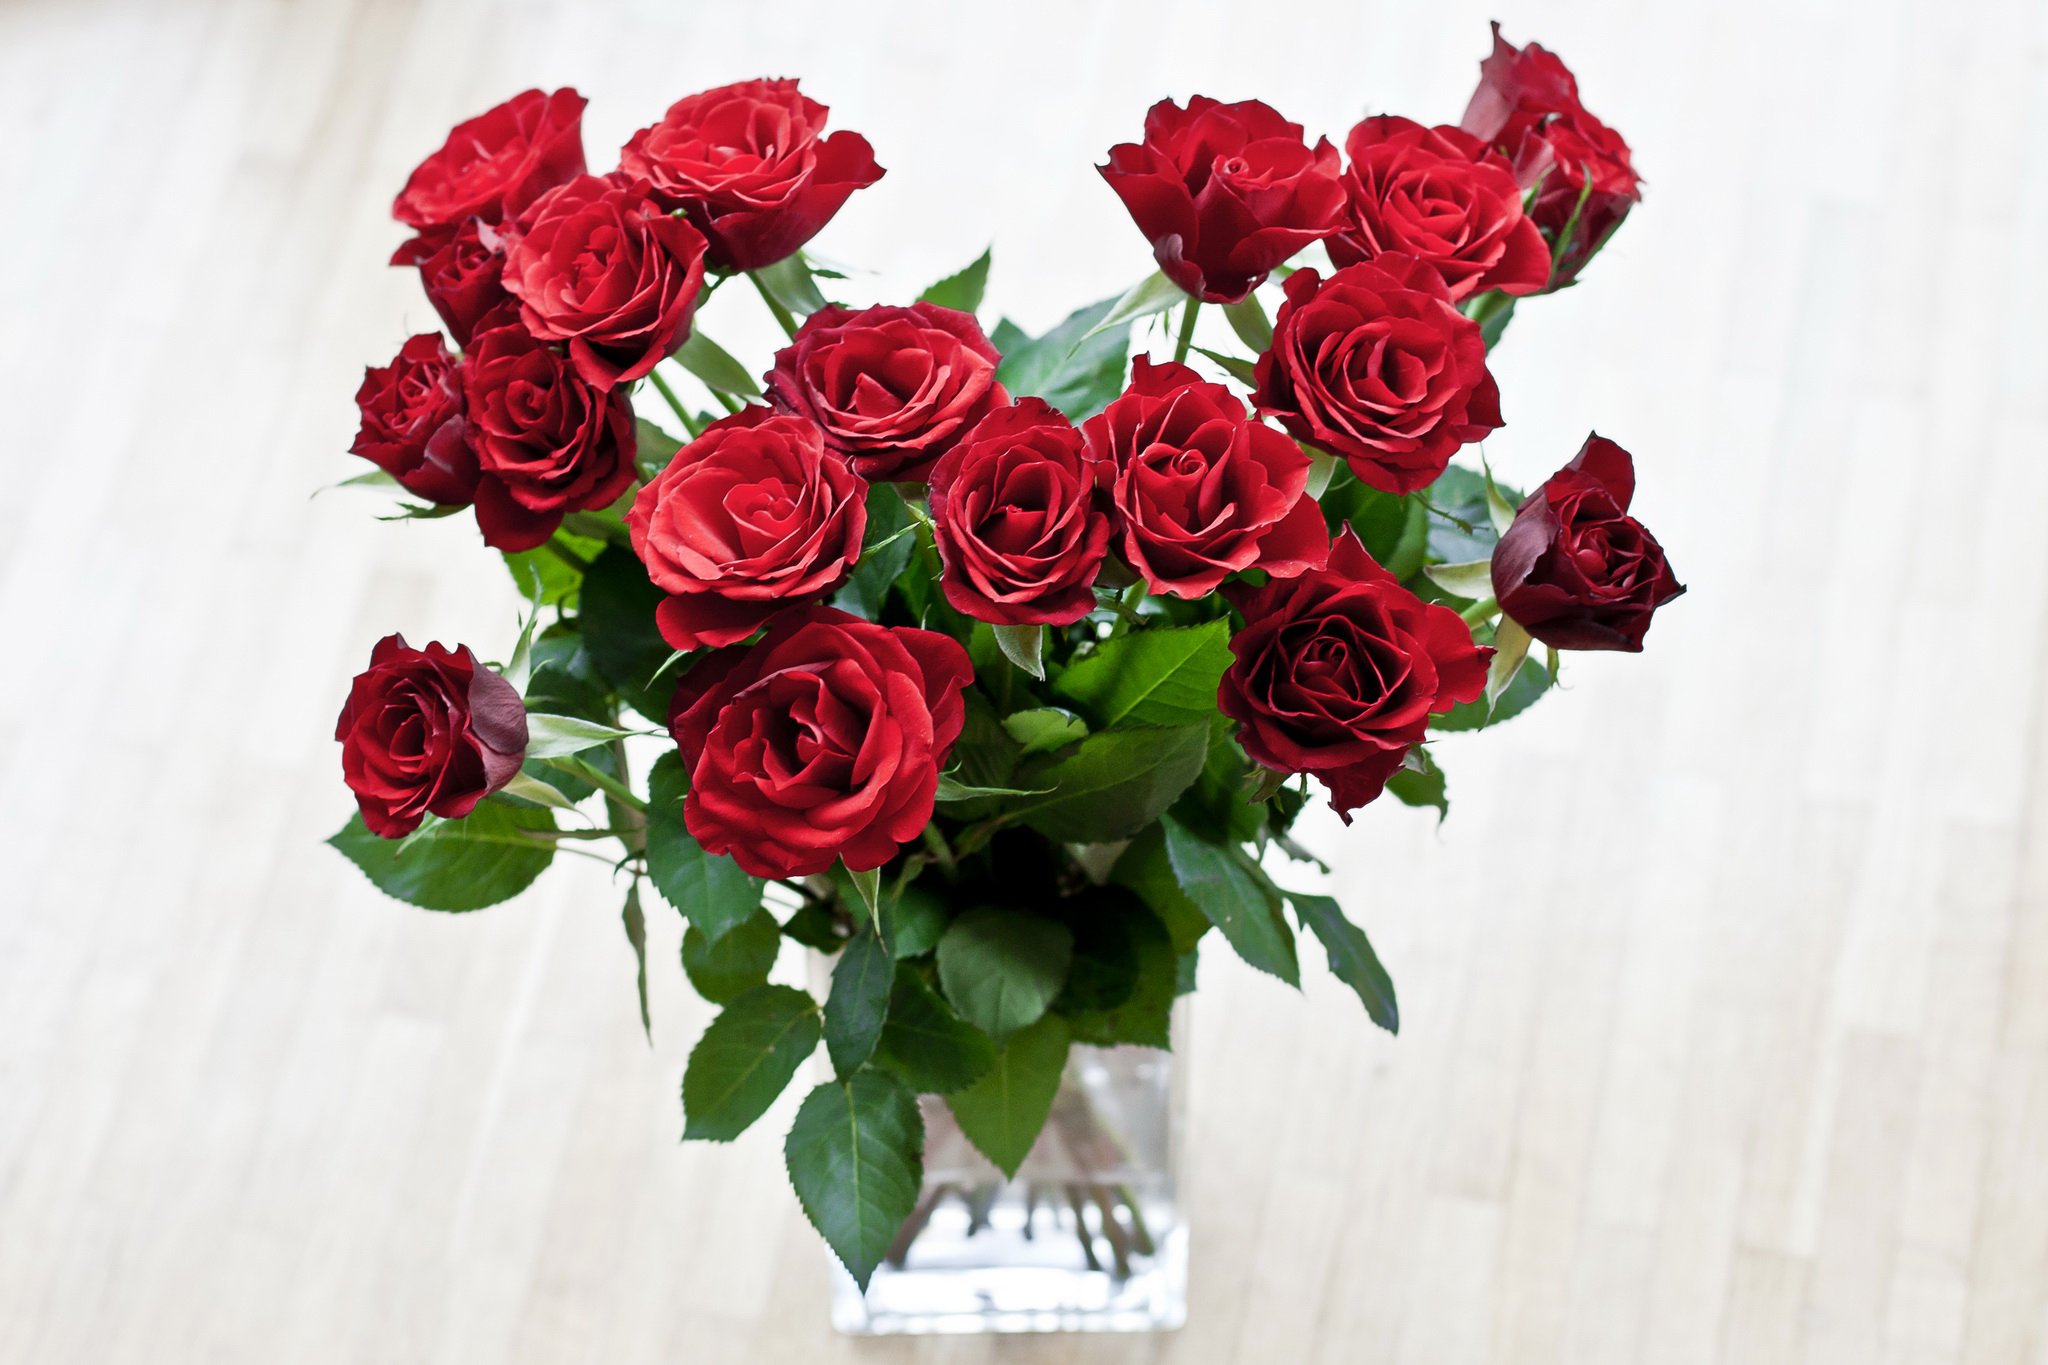 красные розы на столе картинки